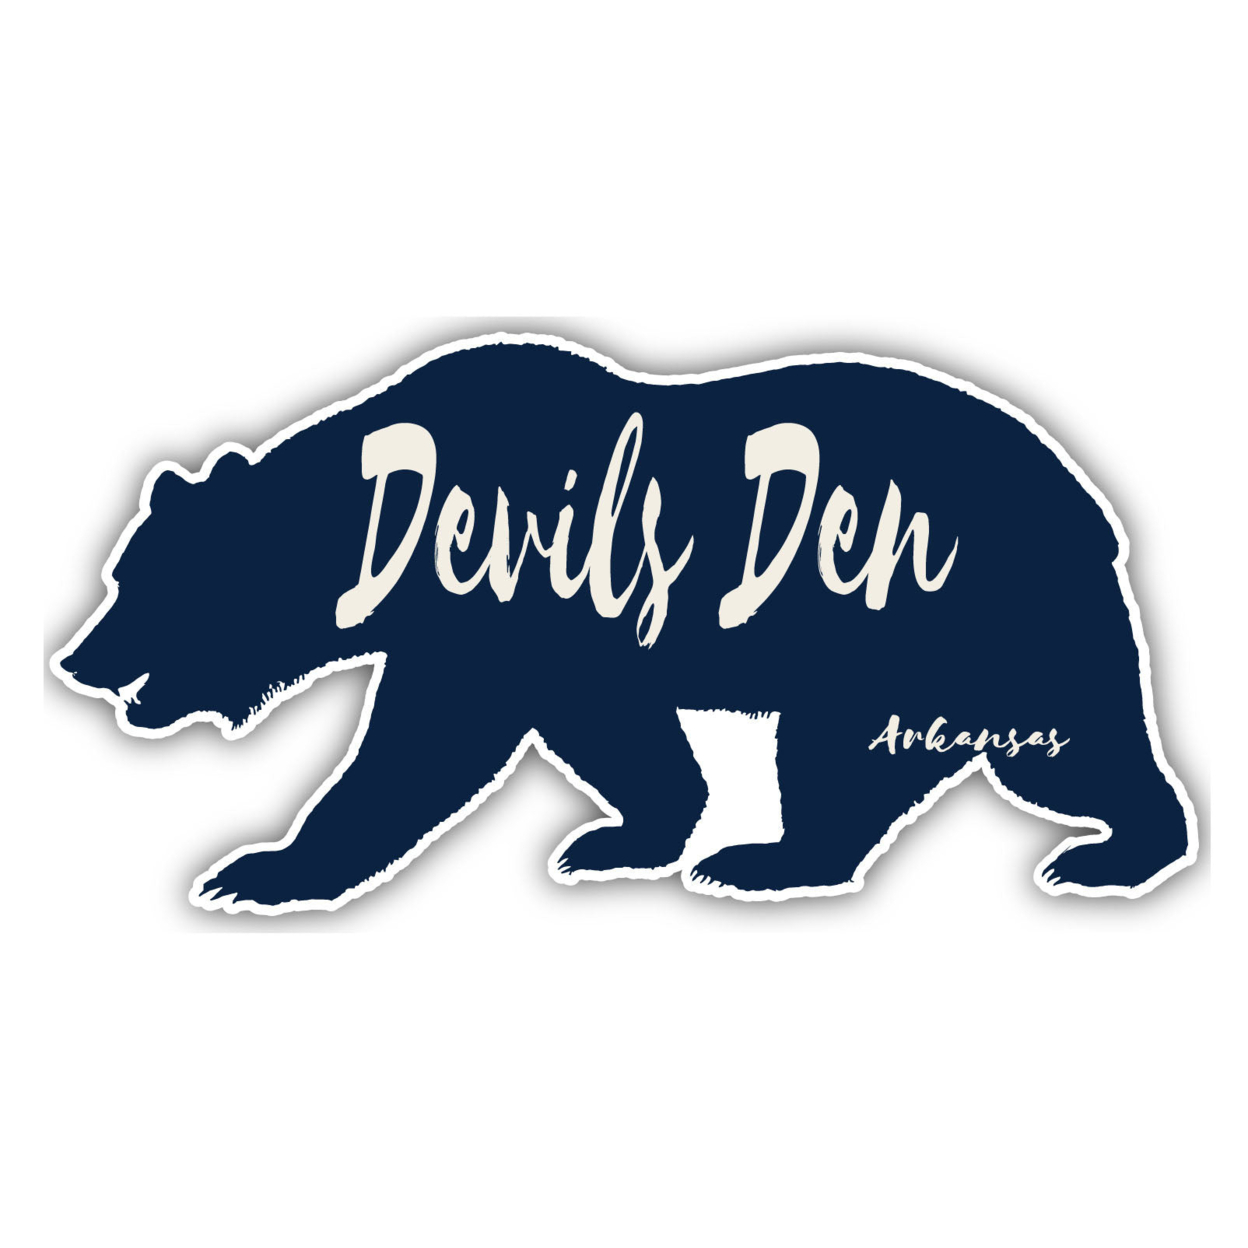 Devils Den Arkansas Souvenir Decorative Stickers (Choose Theme And Size) - Single Unit, 4-Inch, Great Outdoors